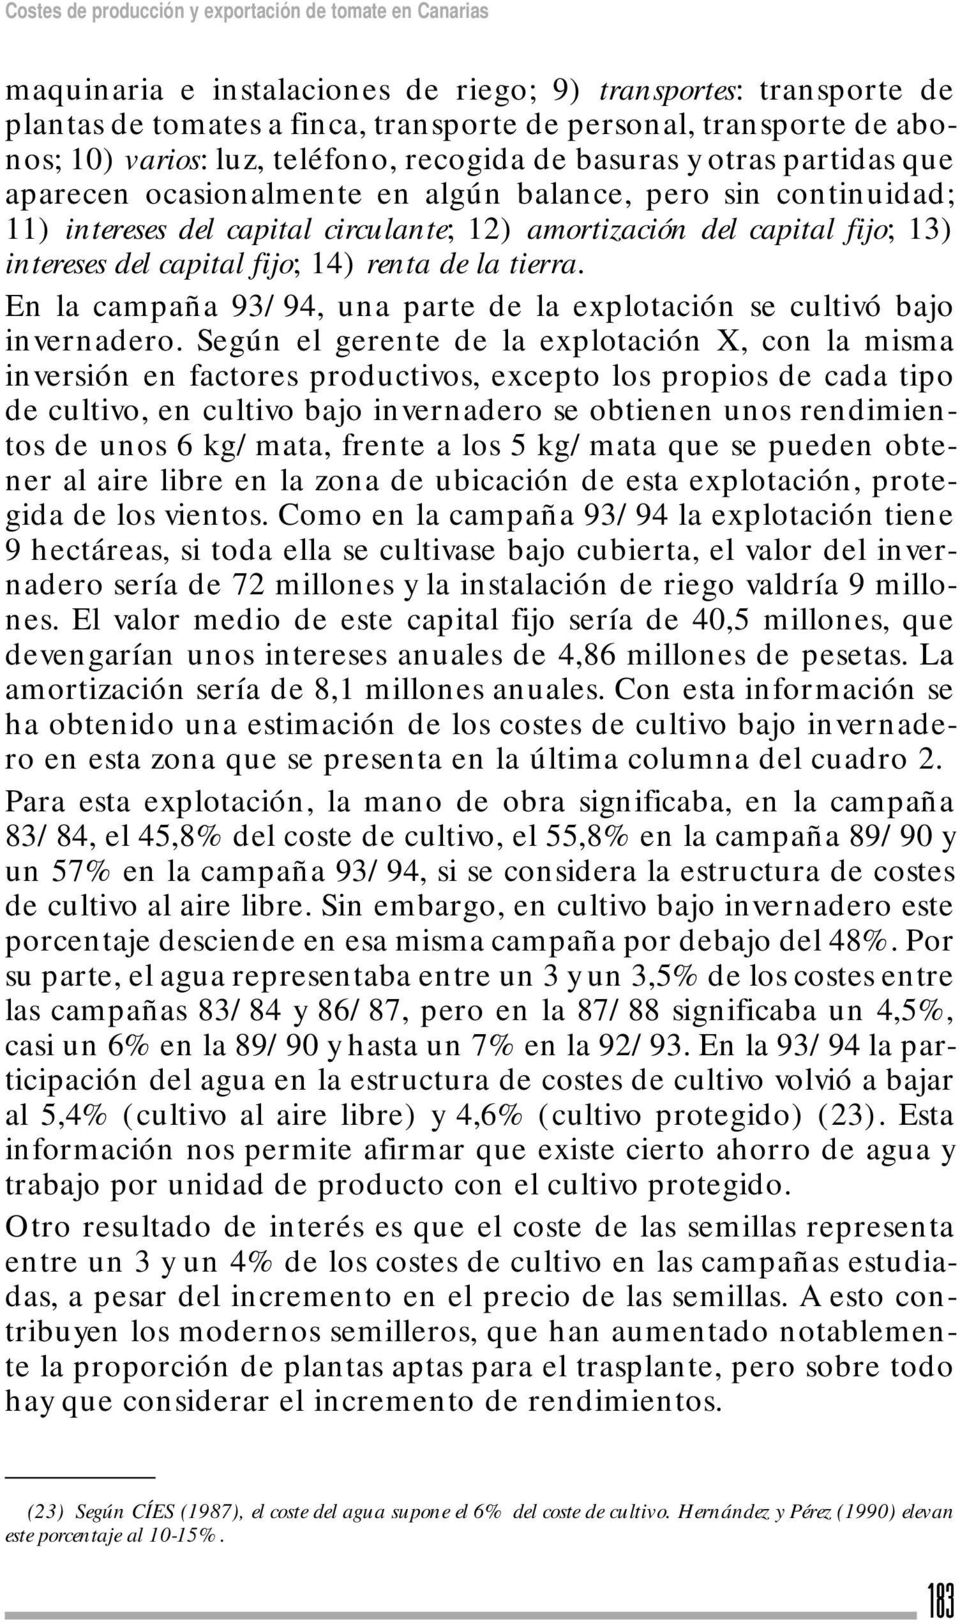 fijo; 13) intereses del capital fijo; 14) renta de la tierra. En la campaña 93/94, una parte de la explotación se cultivó bajo invernadero.